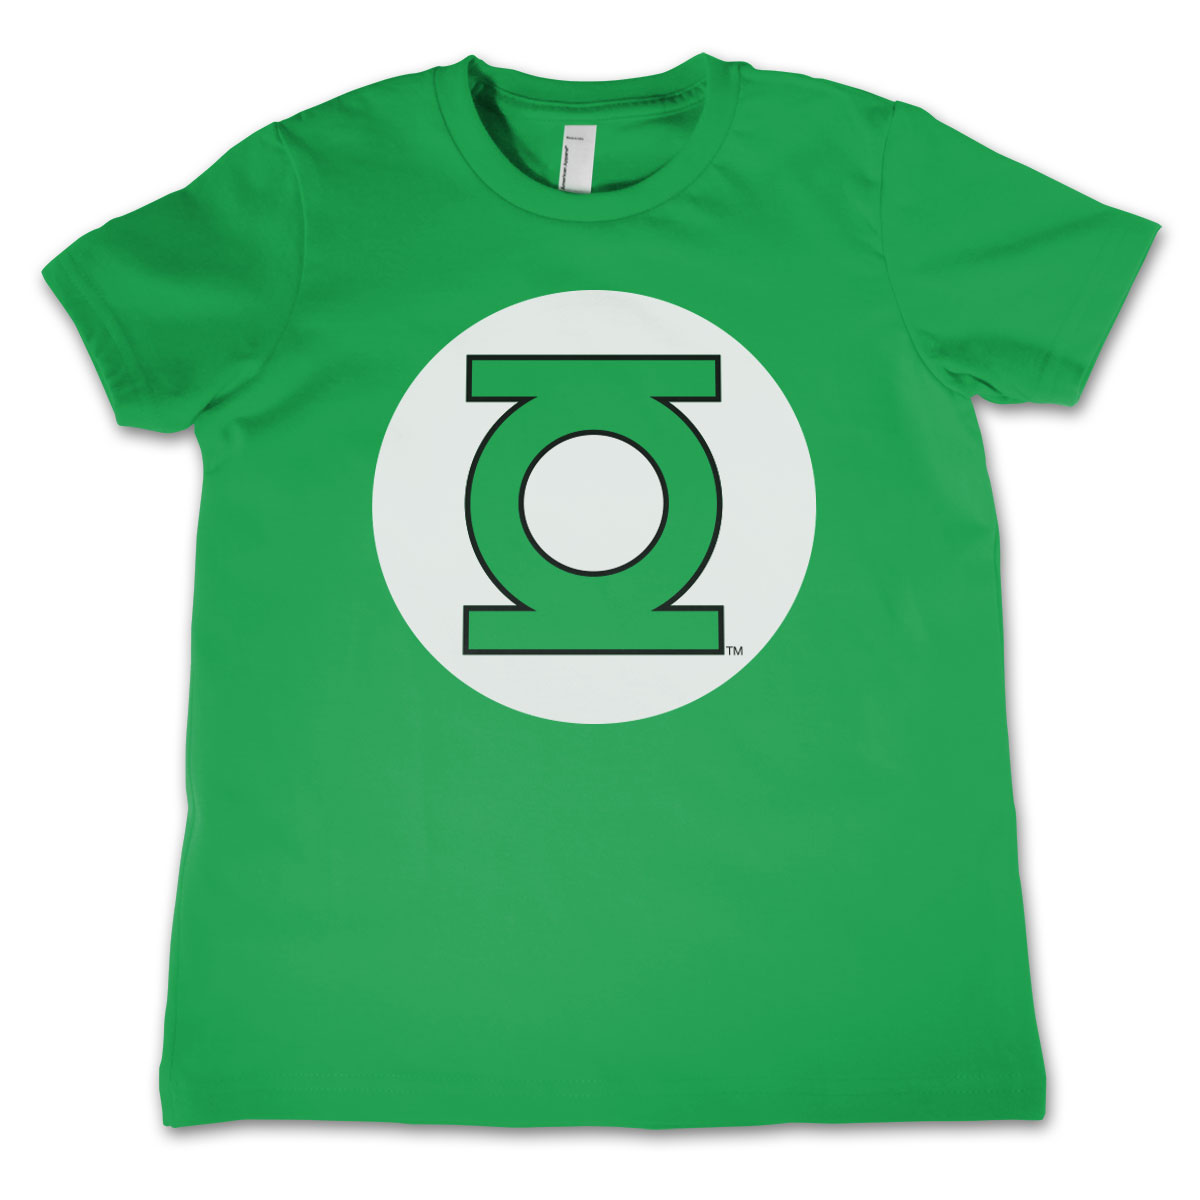 Green Lantern Logo Kids T-Shirt